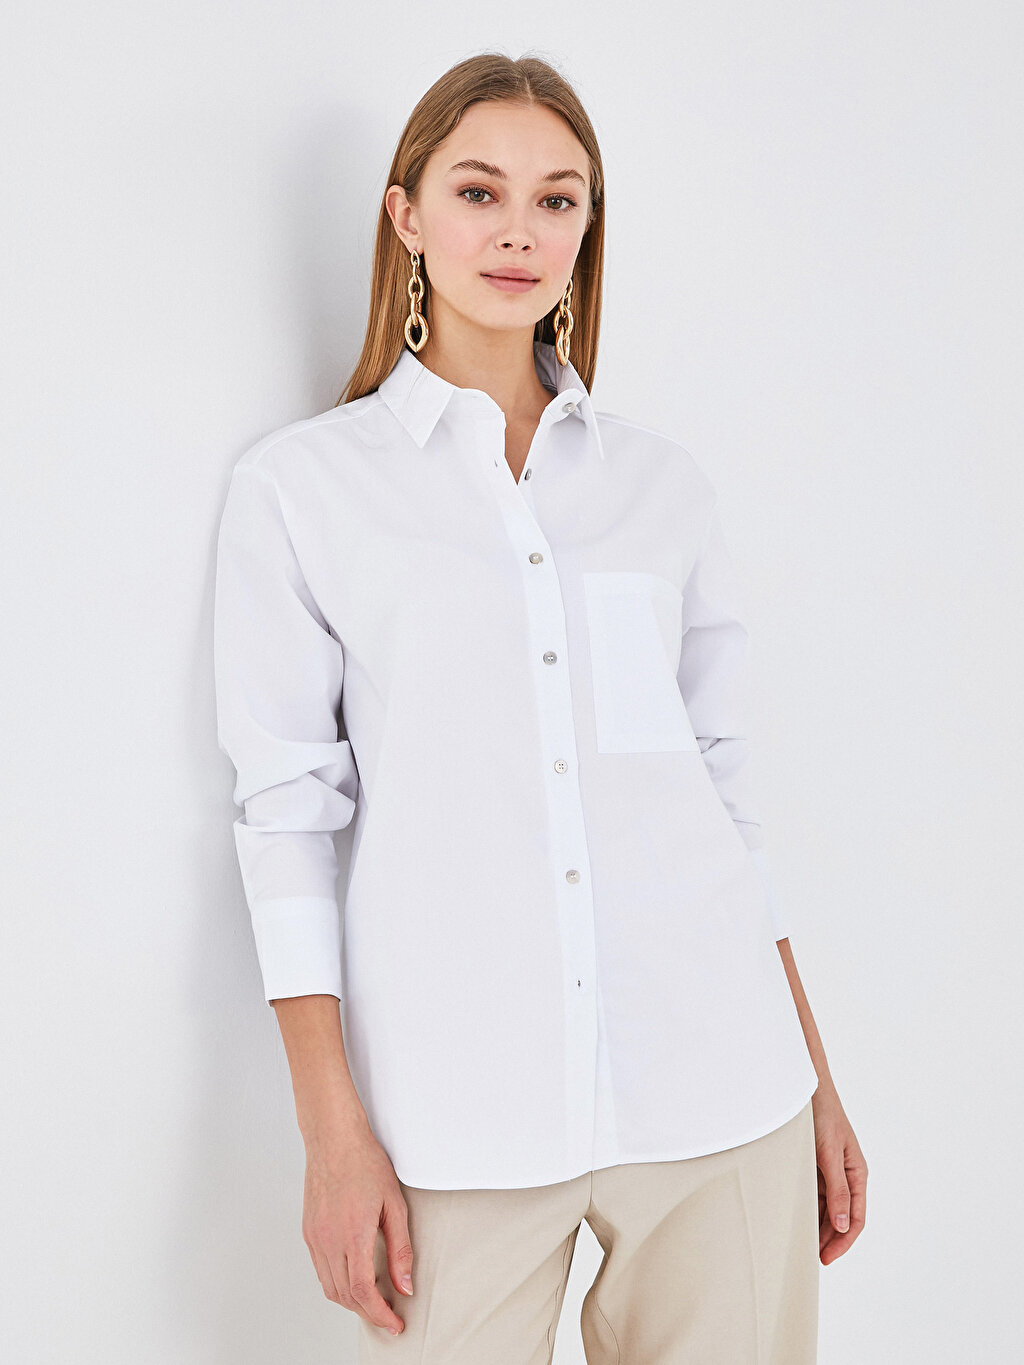 Pocket Detailed Button Closure Long Sleeve Poplin Women's Shirt ...